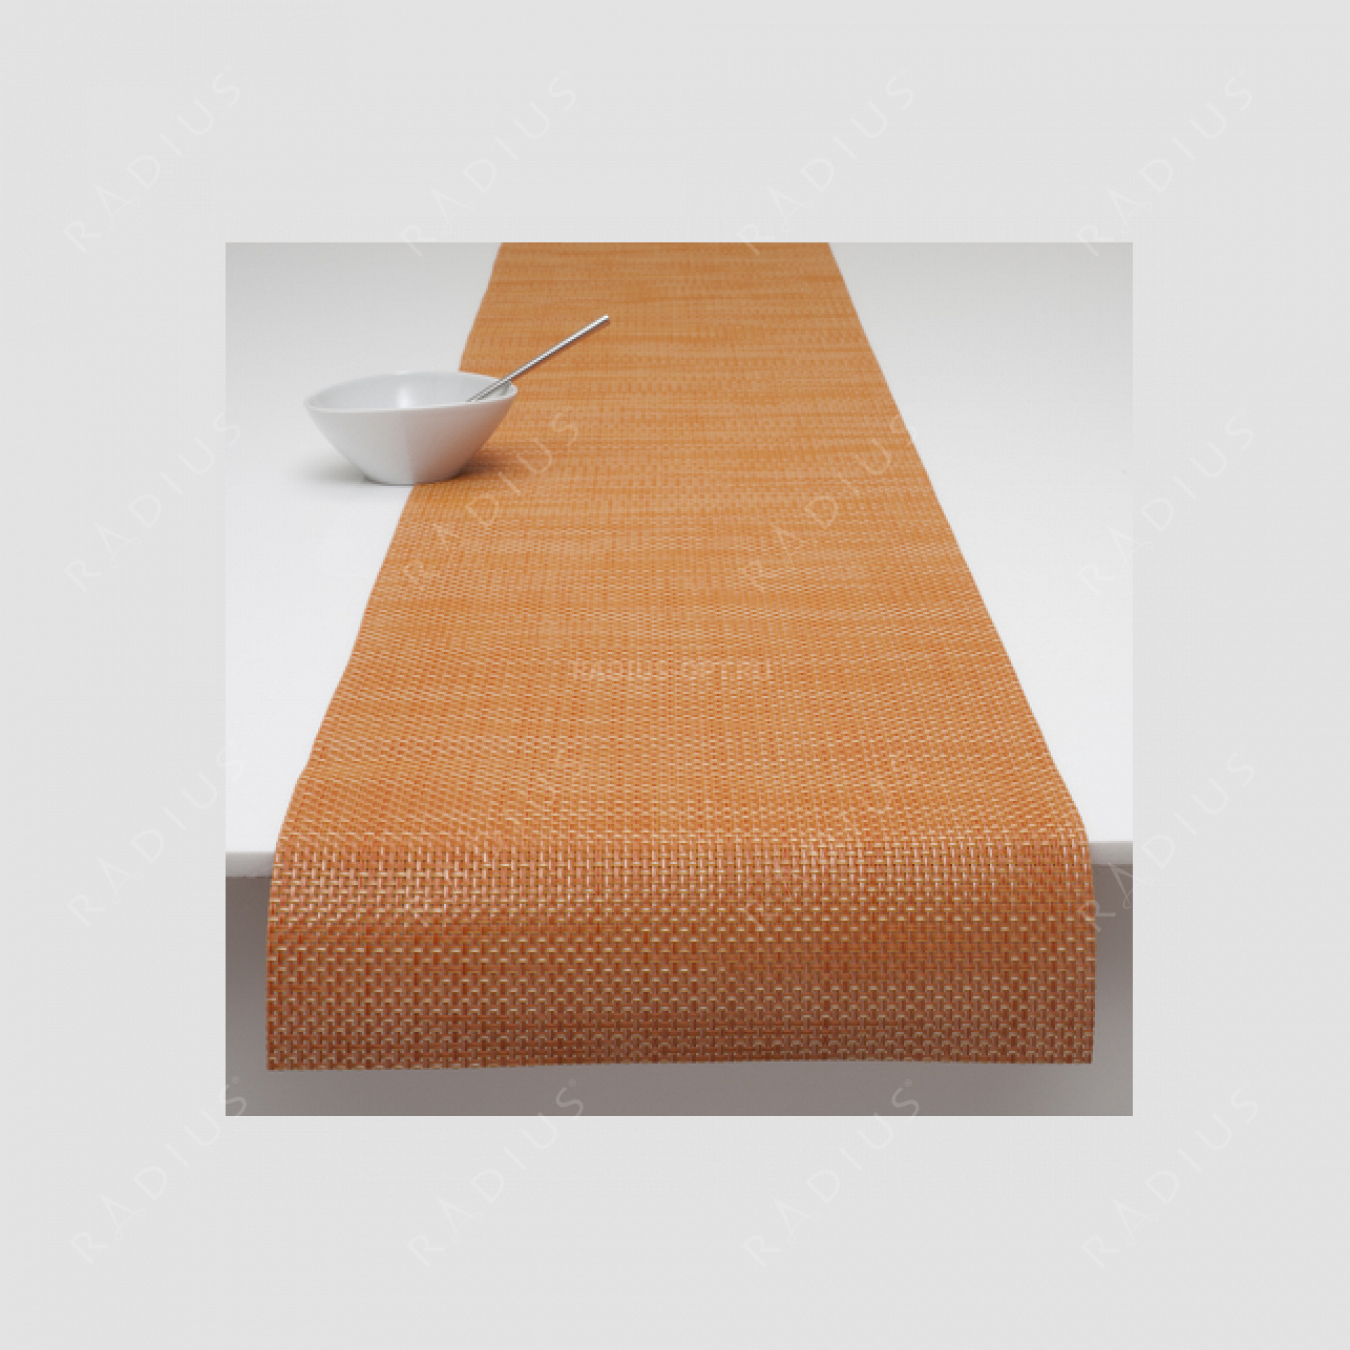 Дорожка для стола, жаккардовое плетение, винил, (36х183), серия Basketweave, CHILEWICH, США